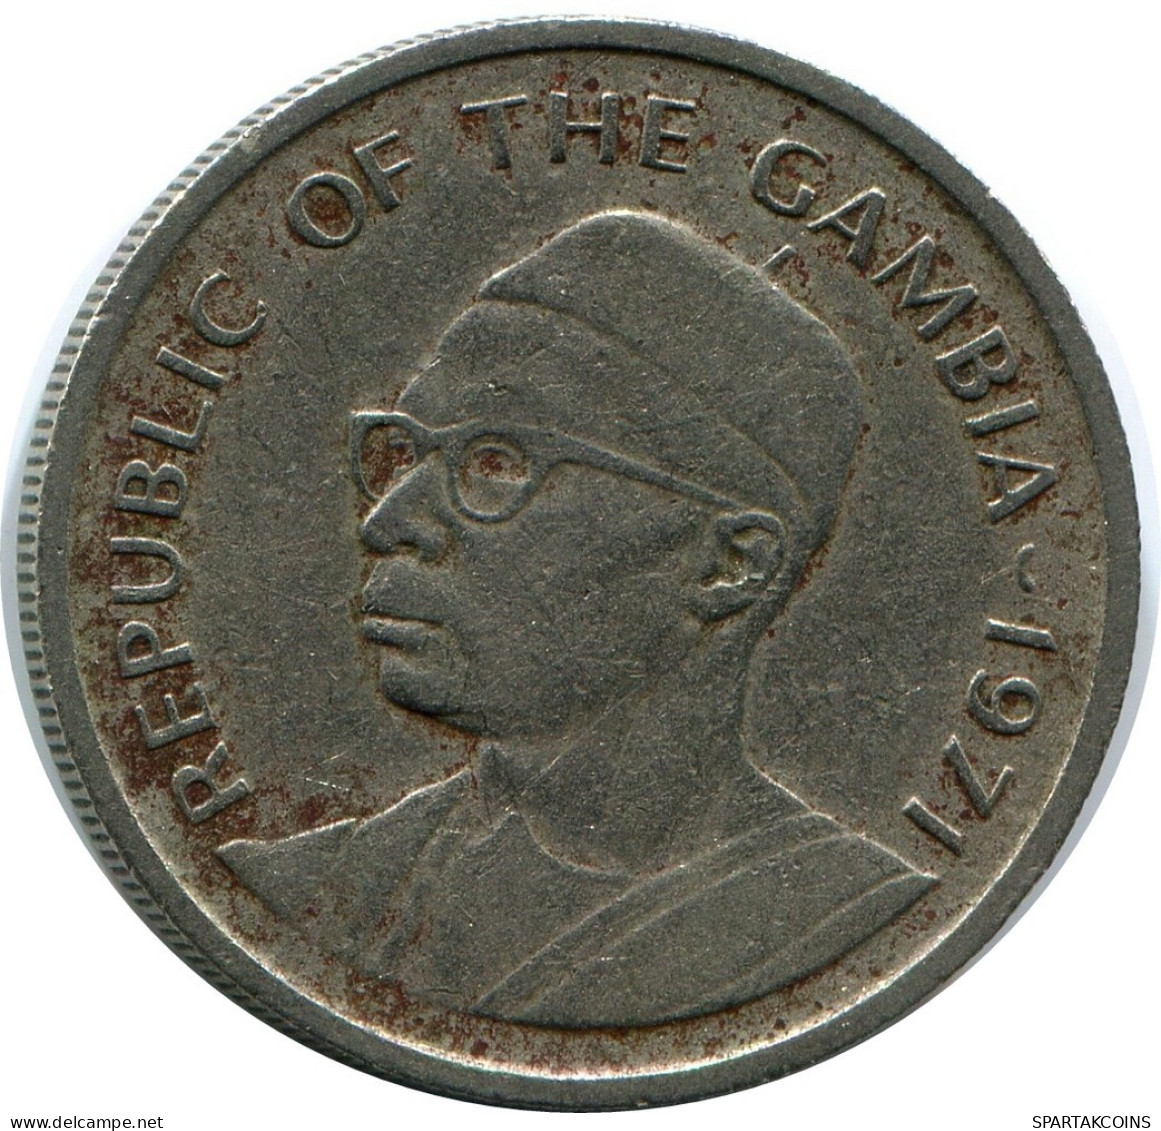 25 BUTUTS 1971 GAMBIA Coin #AP889.U.A - Gambia